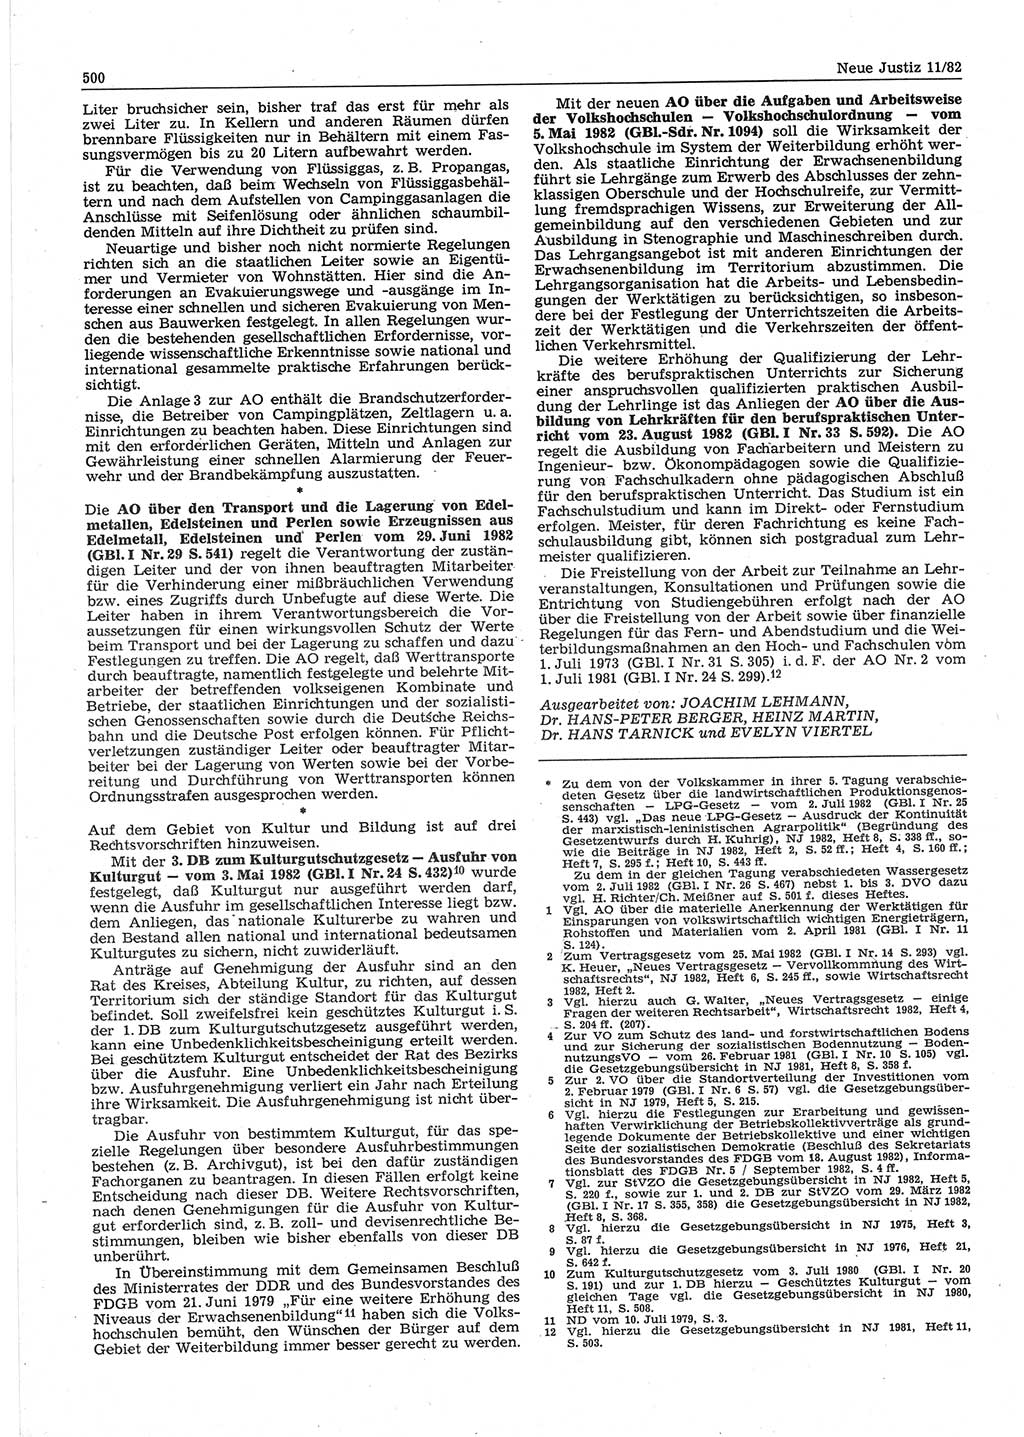 Neue Justiz (NJ), Zeitschrift für sozialistisches Recht und Gesetzlichkeit [Deutsche Demokratische Republik (DDR)], 36. Jahrgang 1982, Seite 500 (NJ DDR 1982, S. 500)